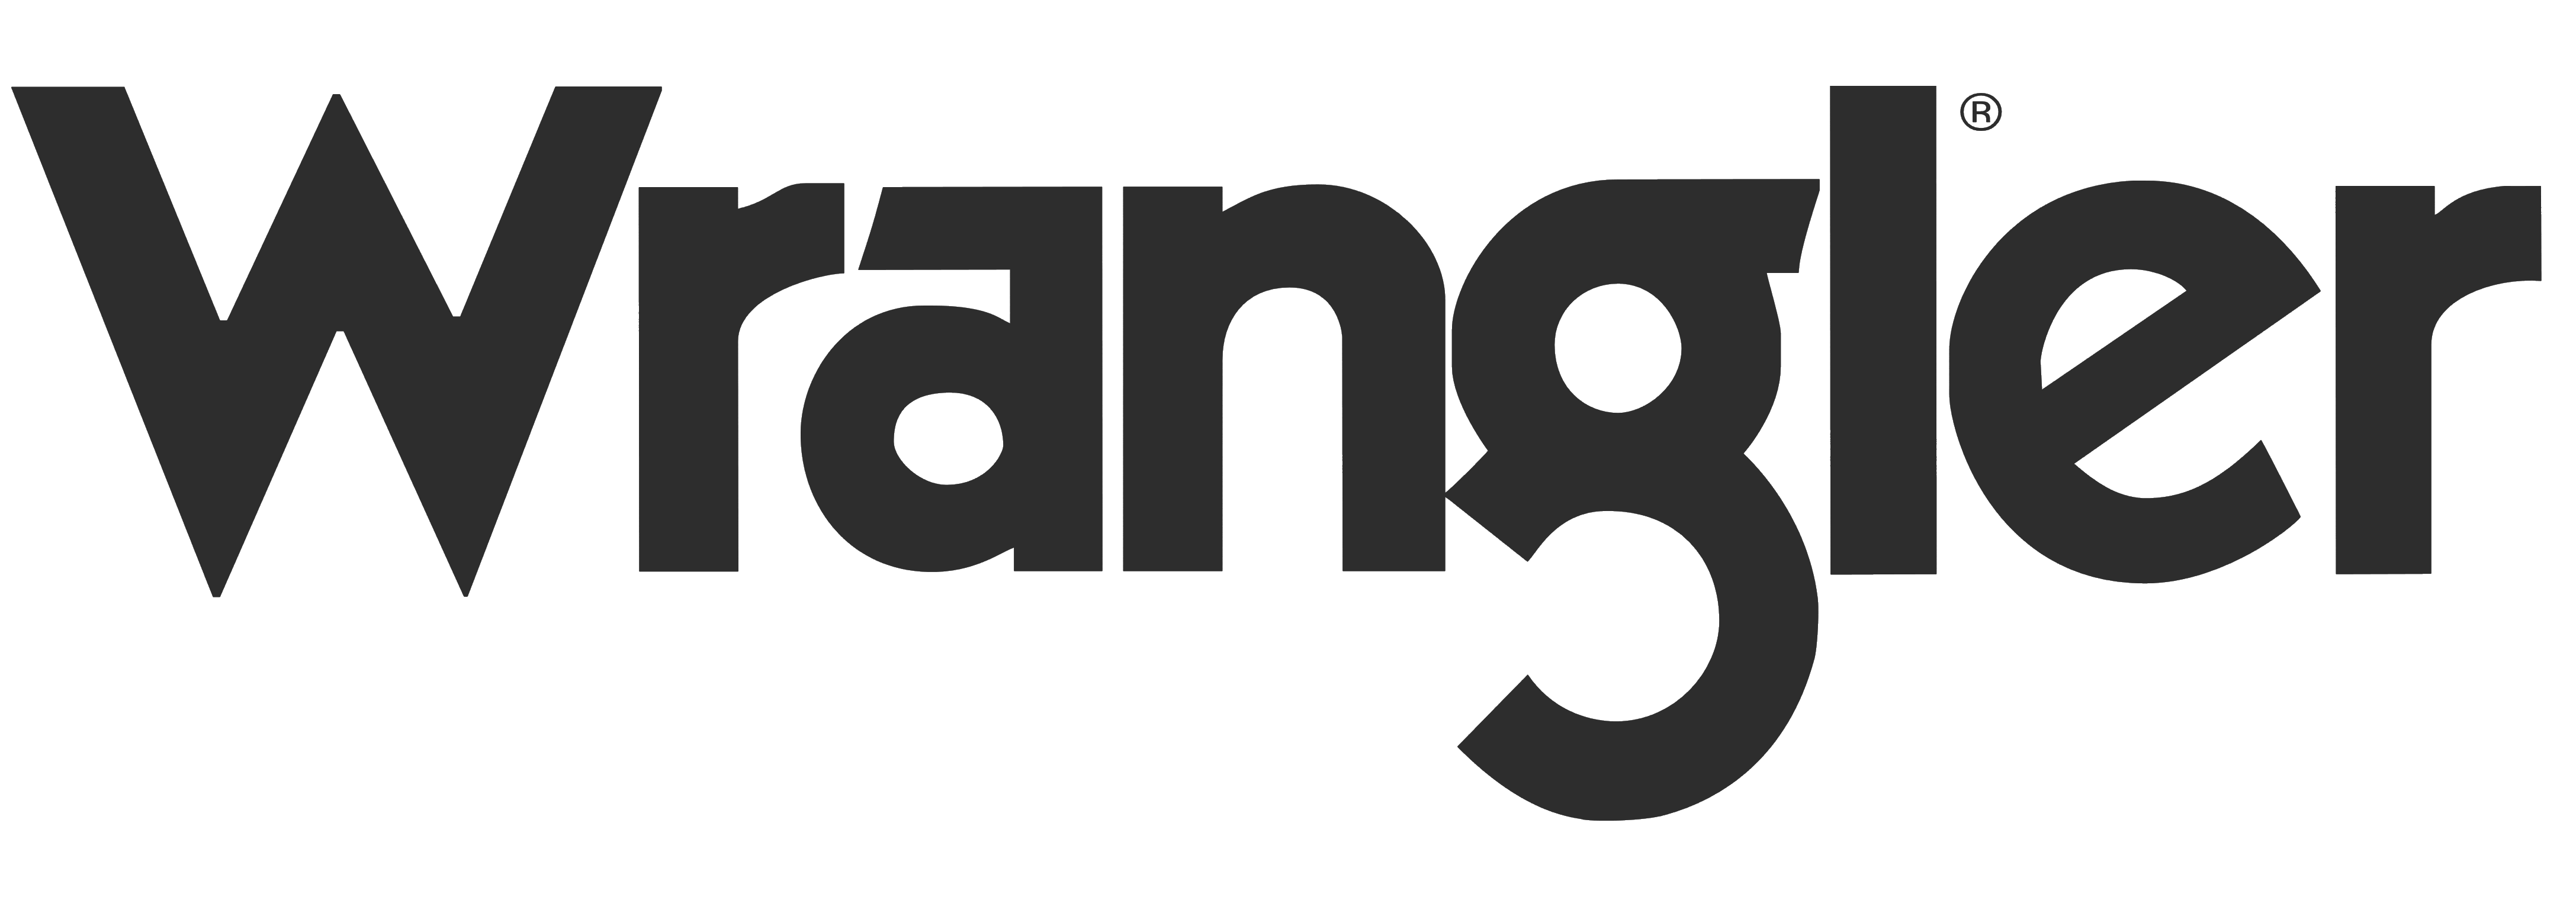 Wrangler_logo